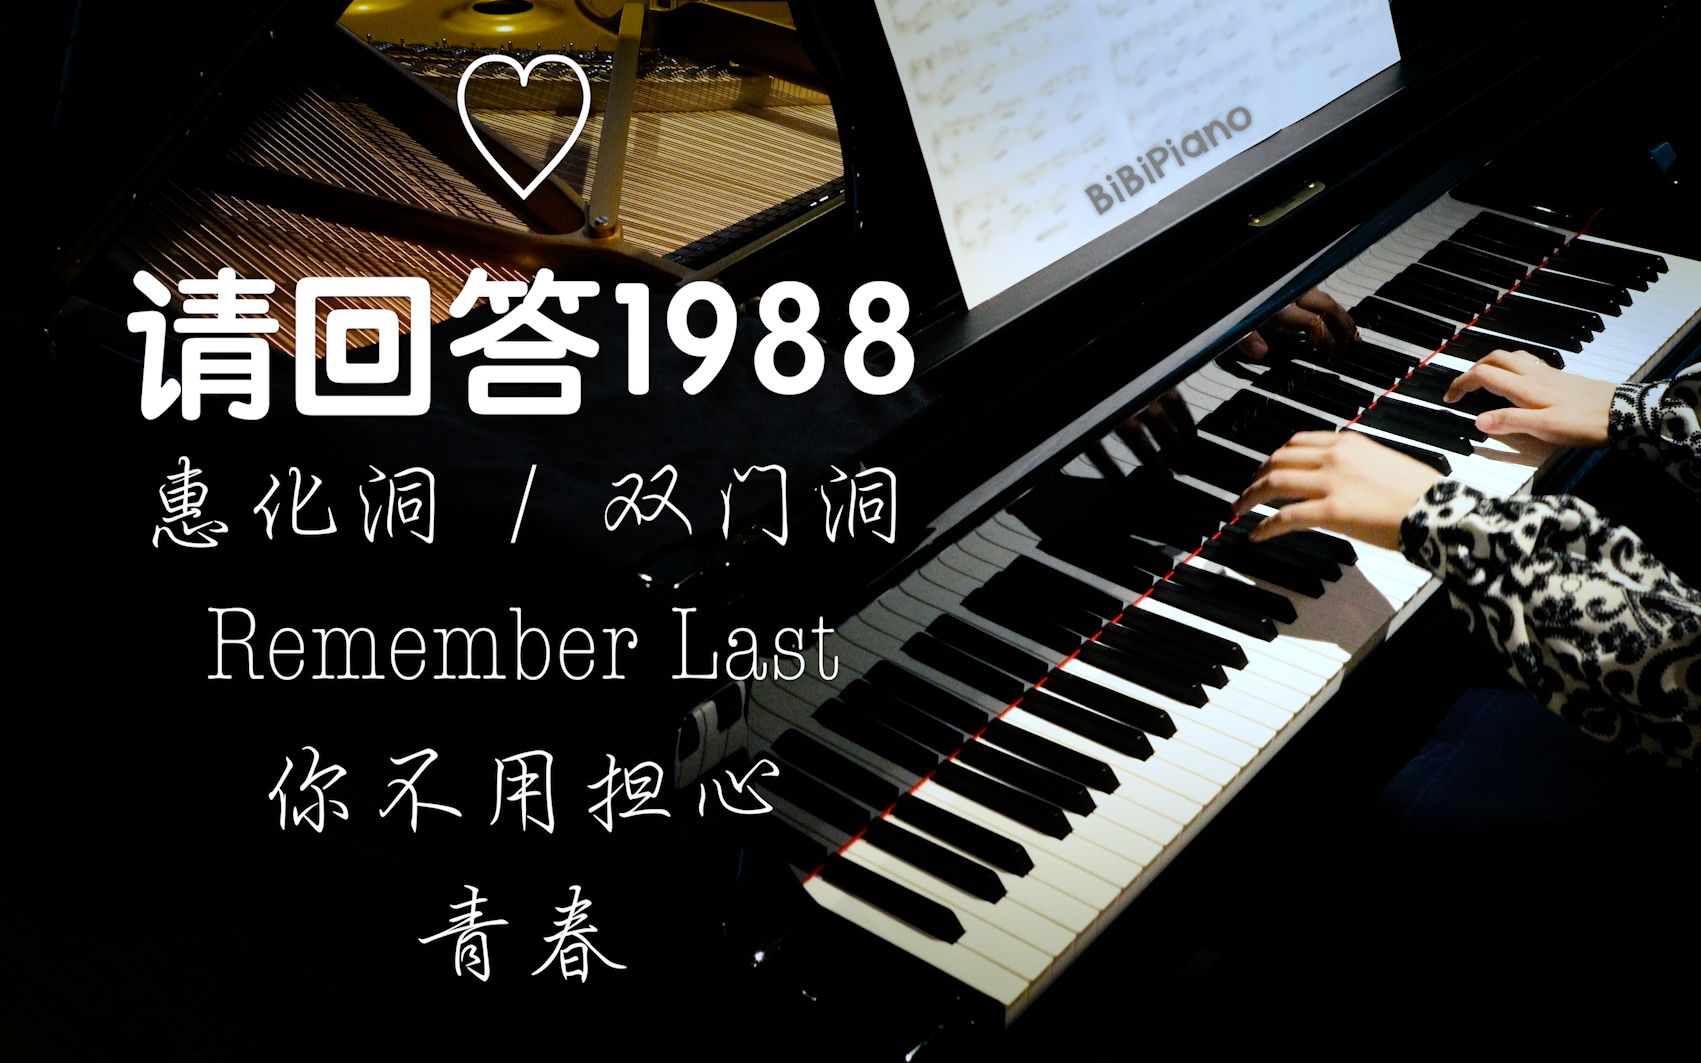 钢琴 请回答1988 插曲 惠化洞 青春 你不用担心 Remember Last 【4K】